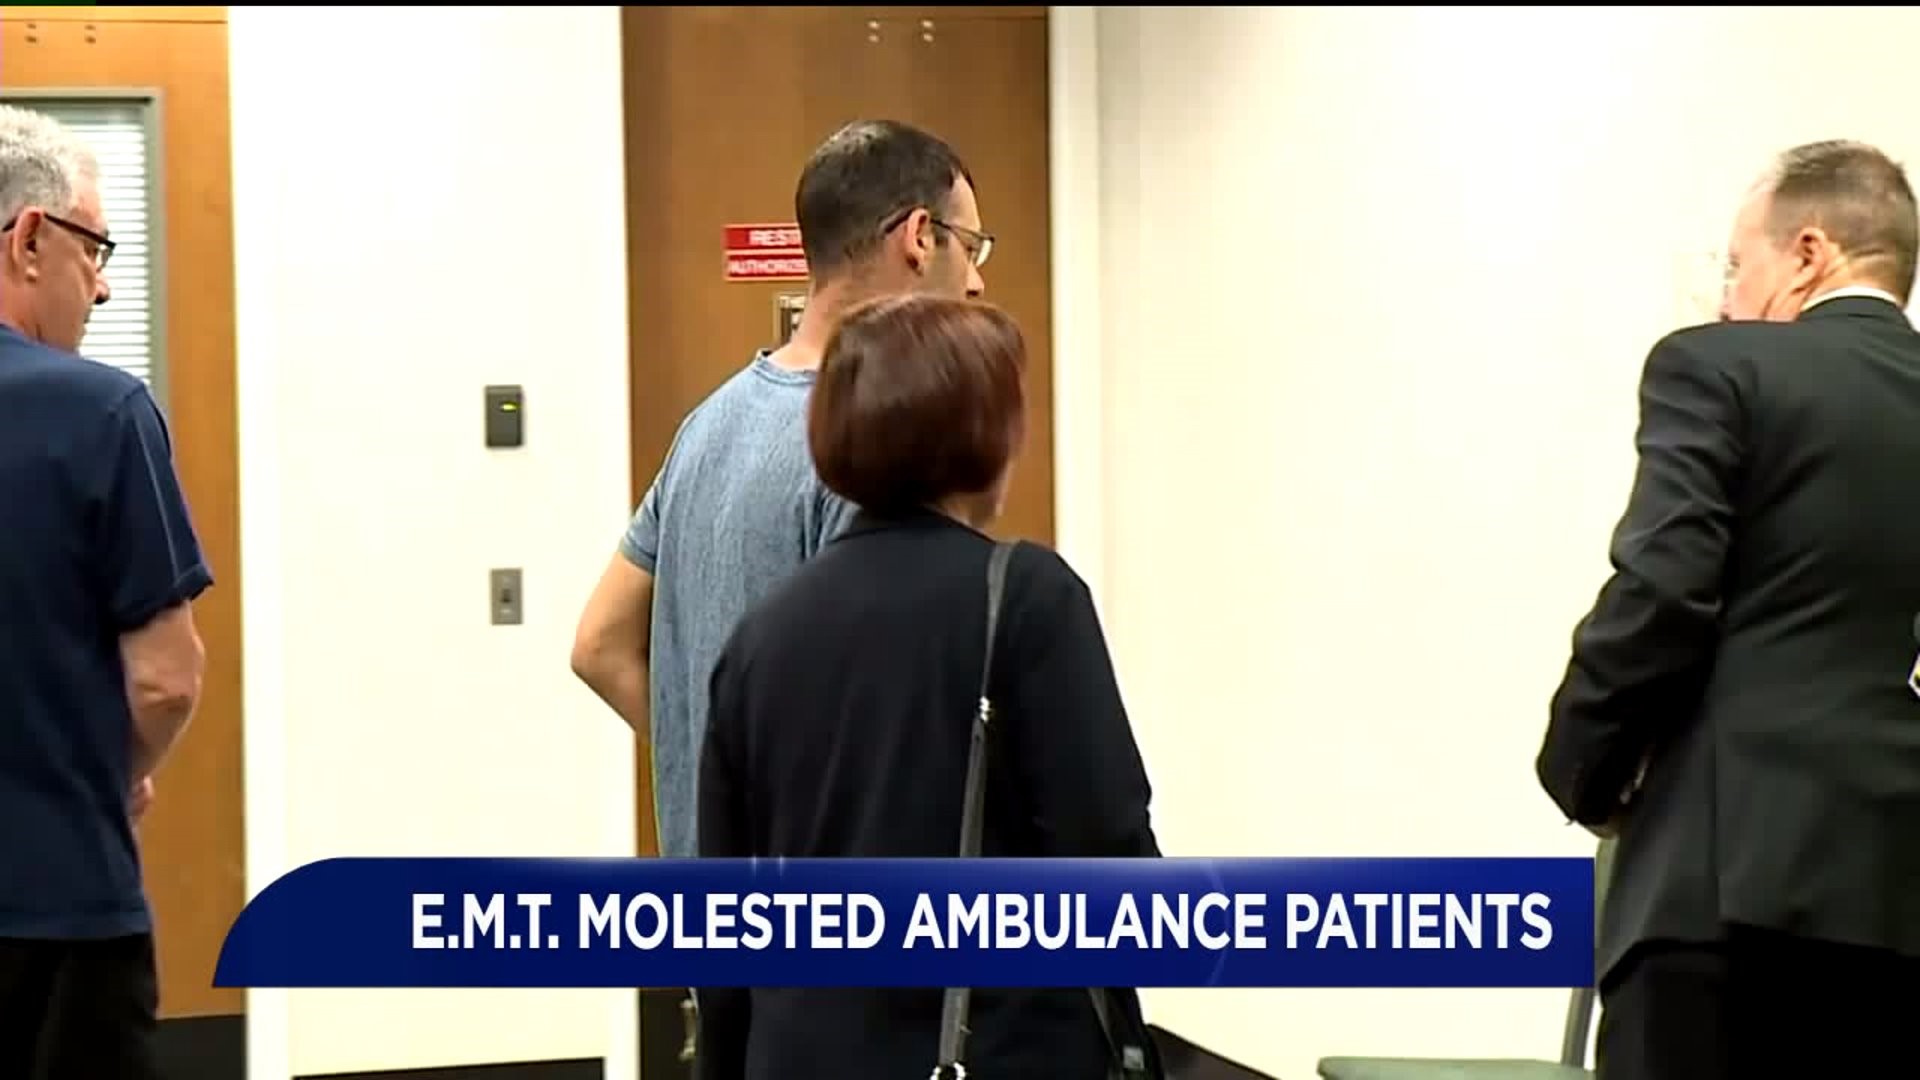 Former EMT Sentenced for Molesting Ambulance Patients